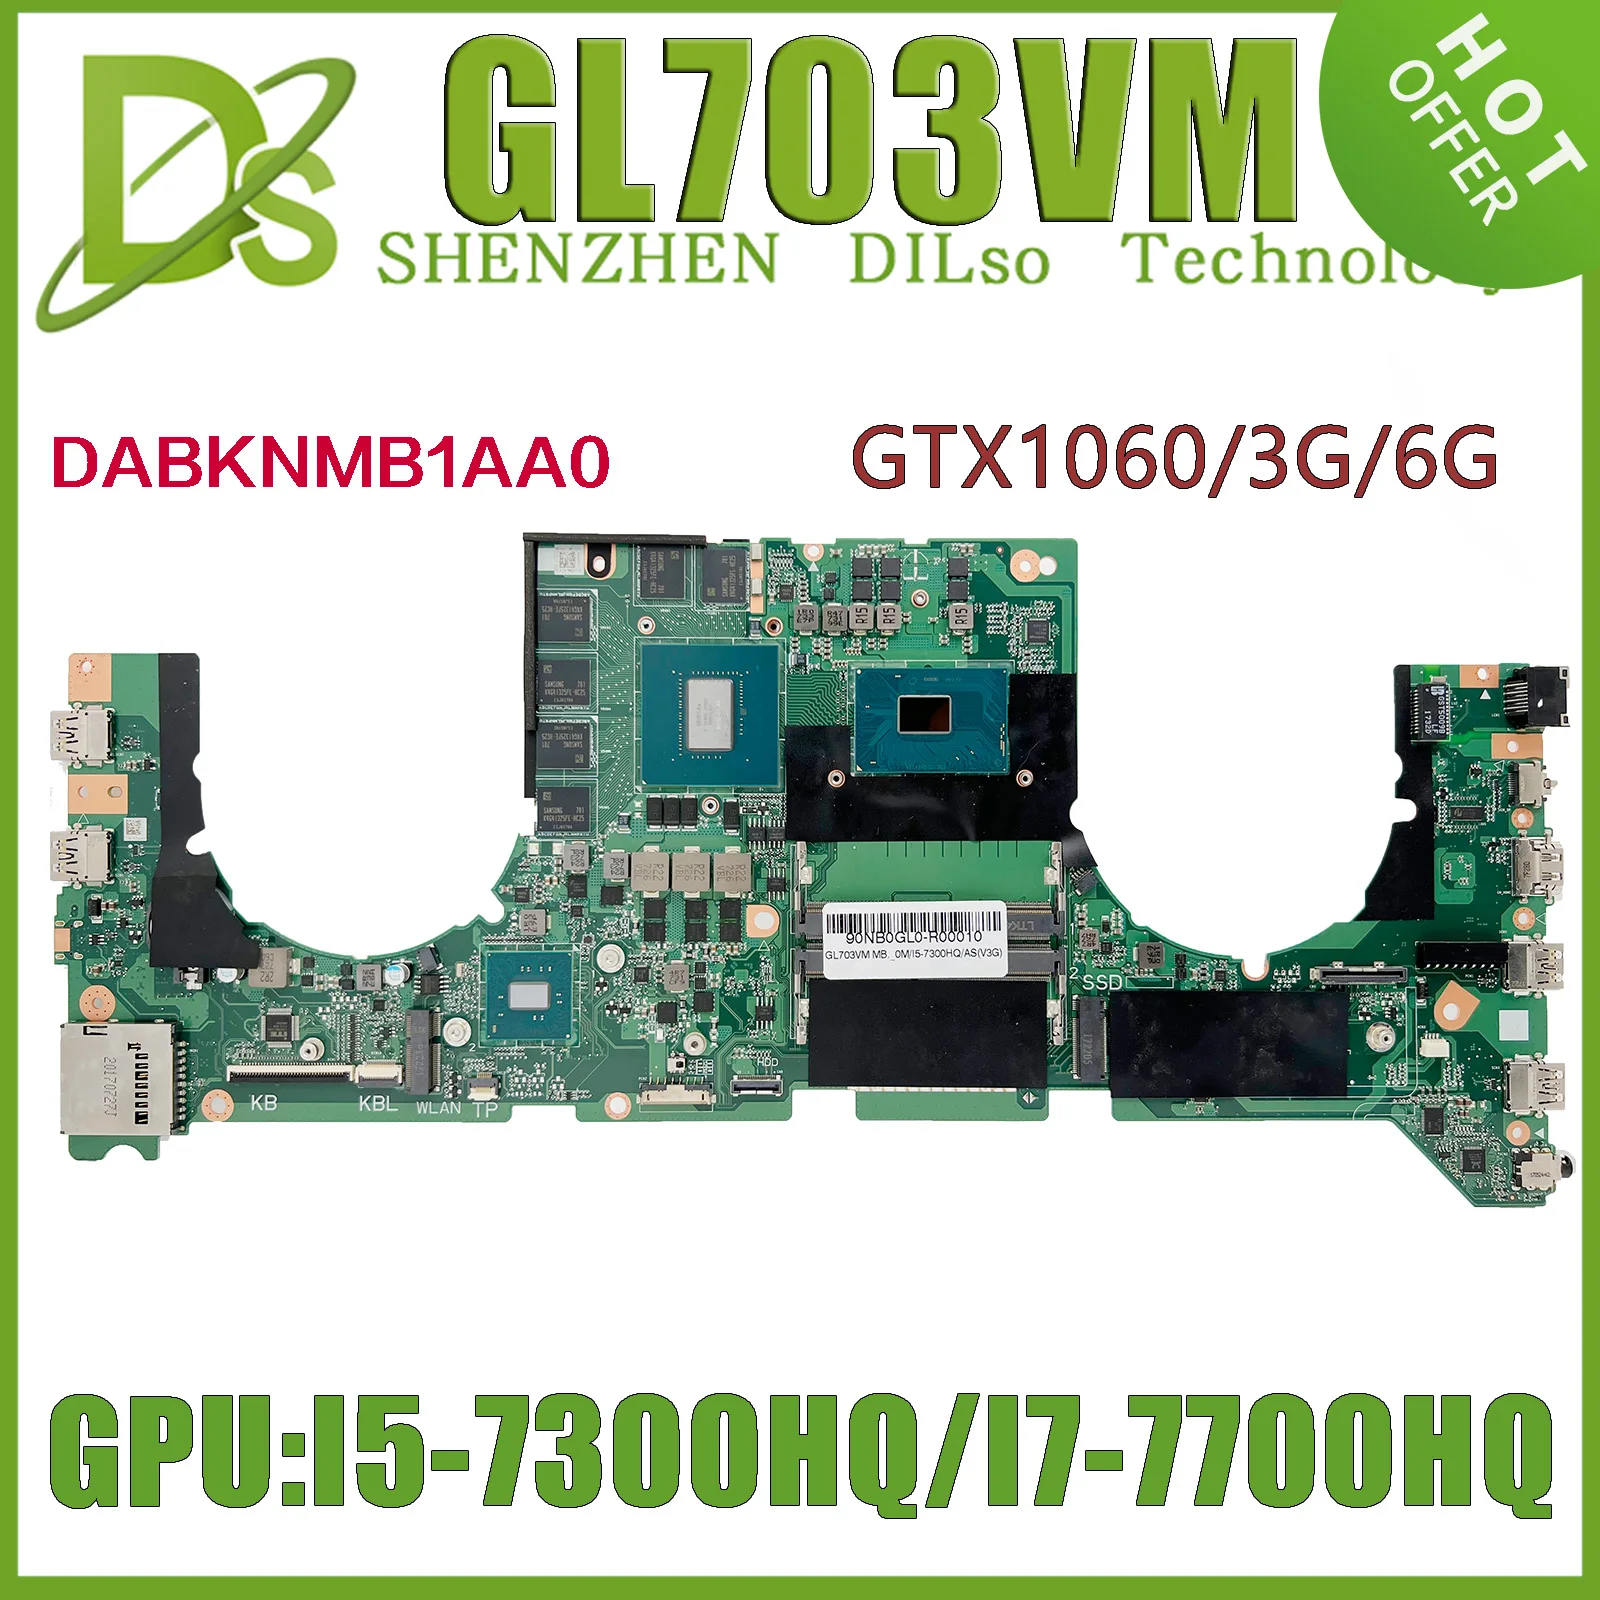 KEFU GL703VM (DABKNMB1AA0) Материнская плата для ноутбука ASUS GL703V Материнская плата с I7-7700HQ I5-7300HQ GTX1060-3G/6G N17E-G1-A1 100% Тест